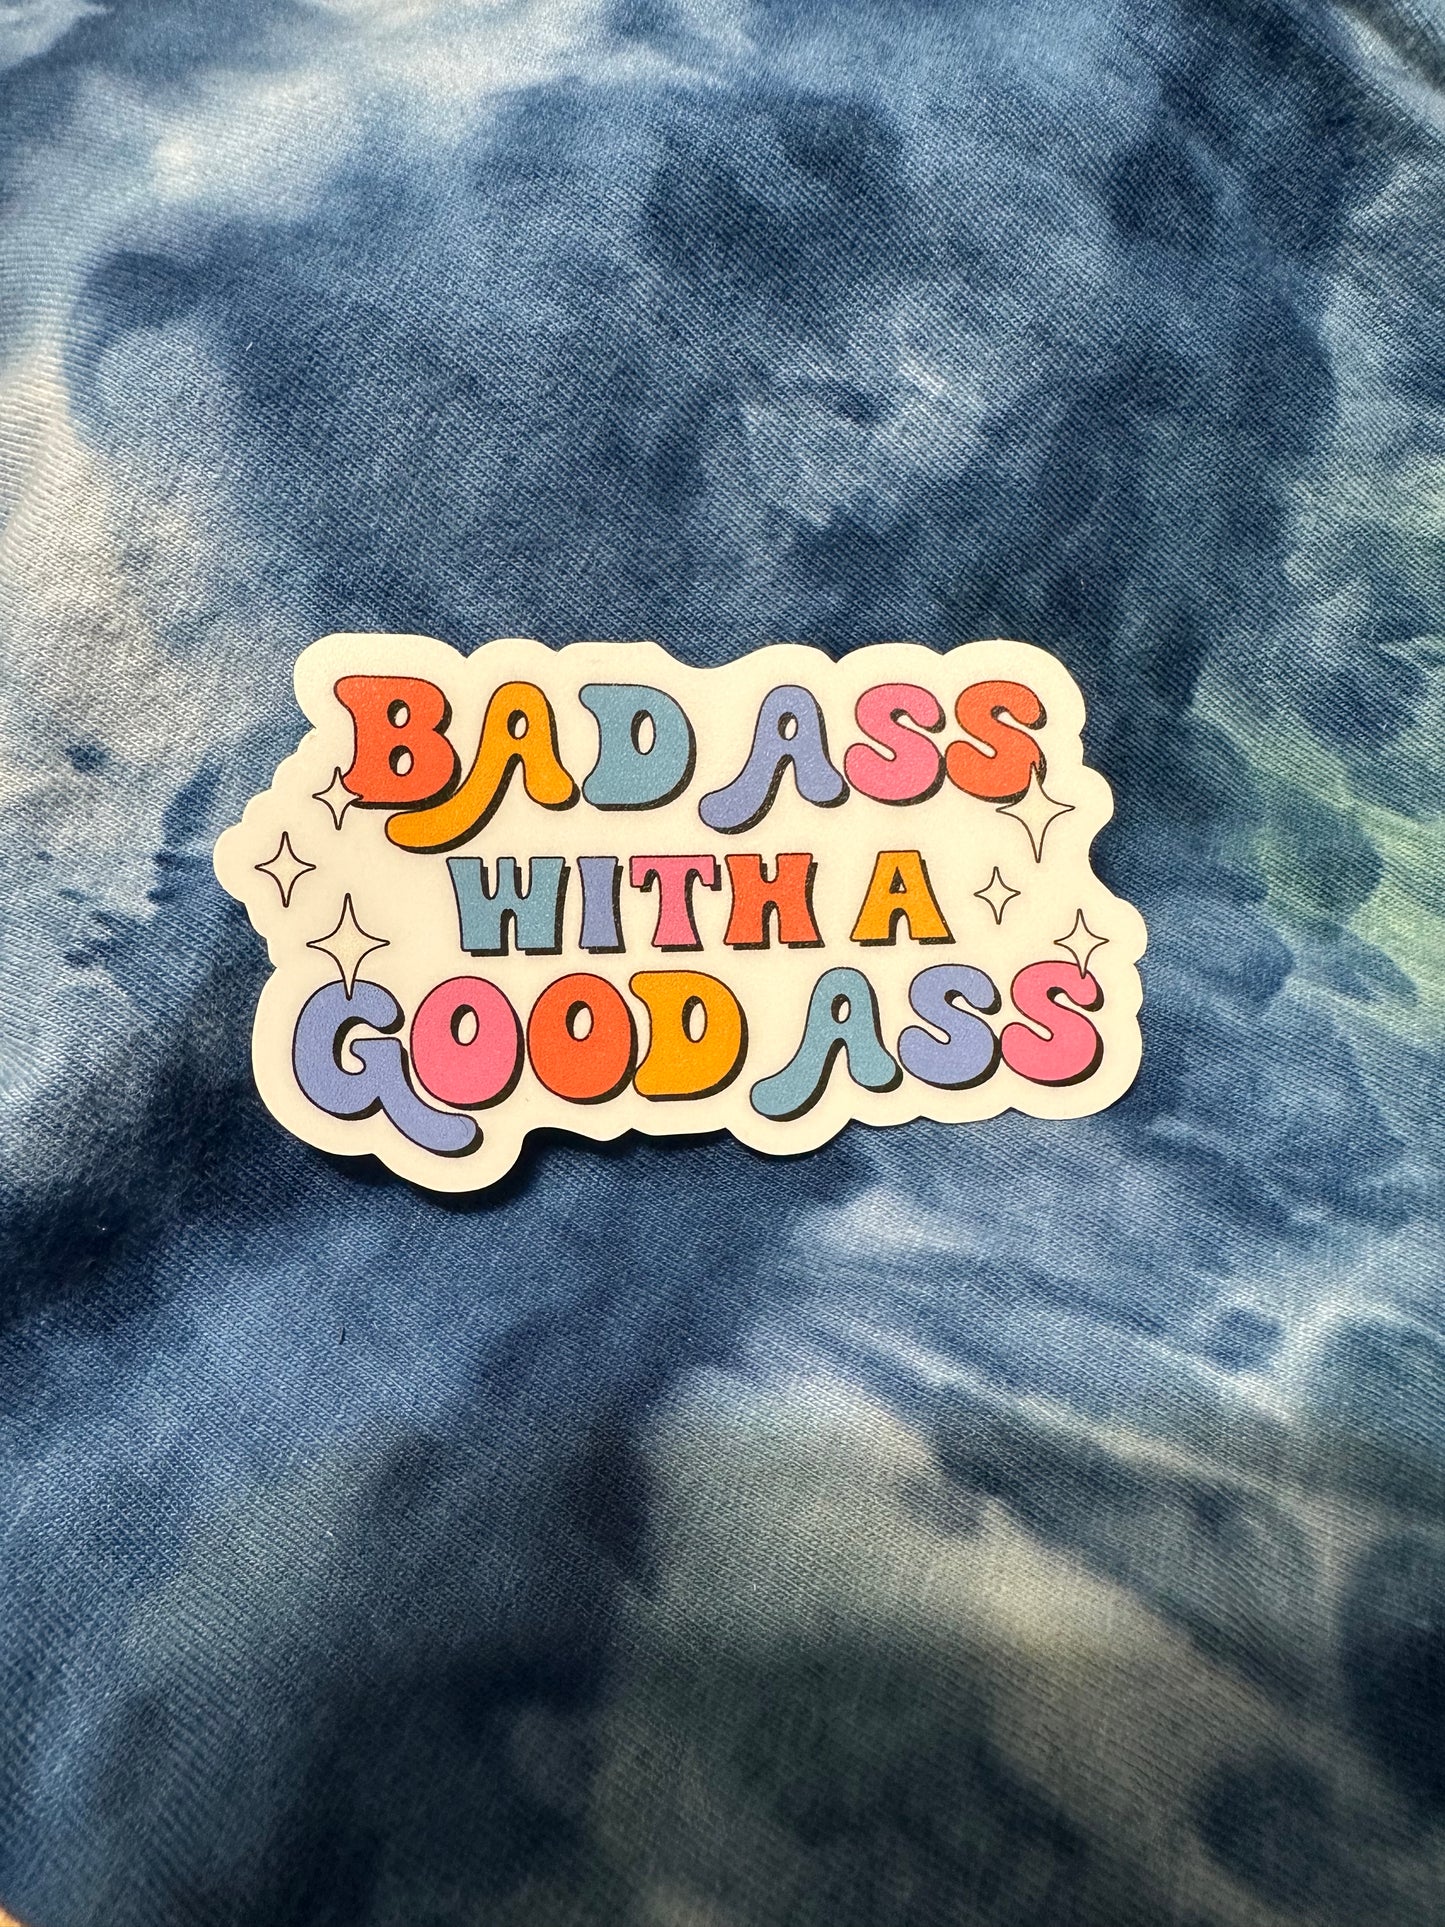 Bad ass with a good ass